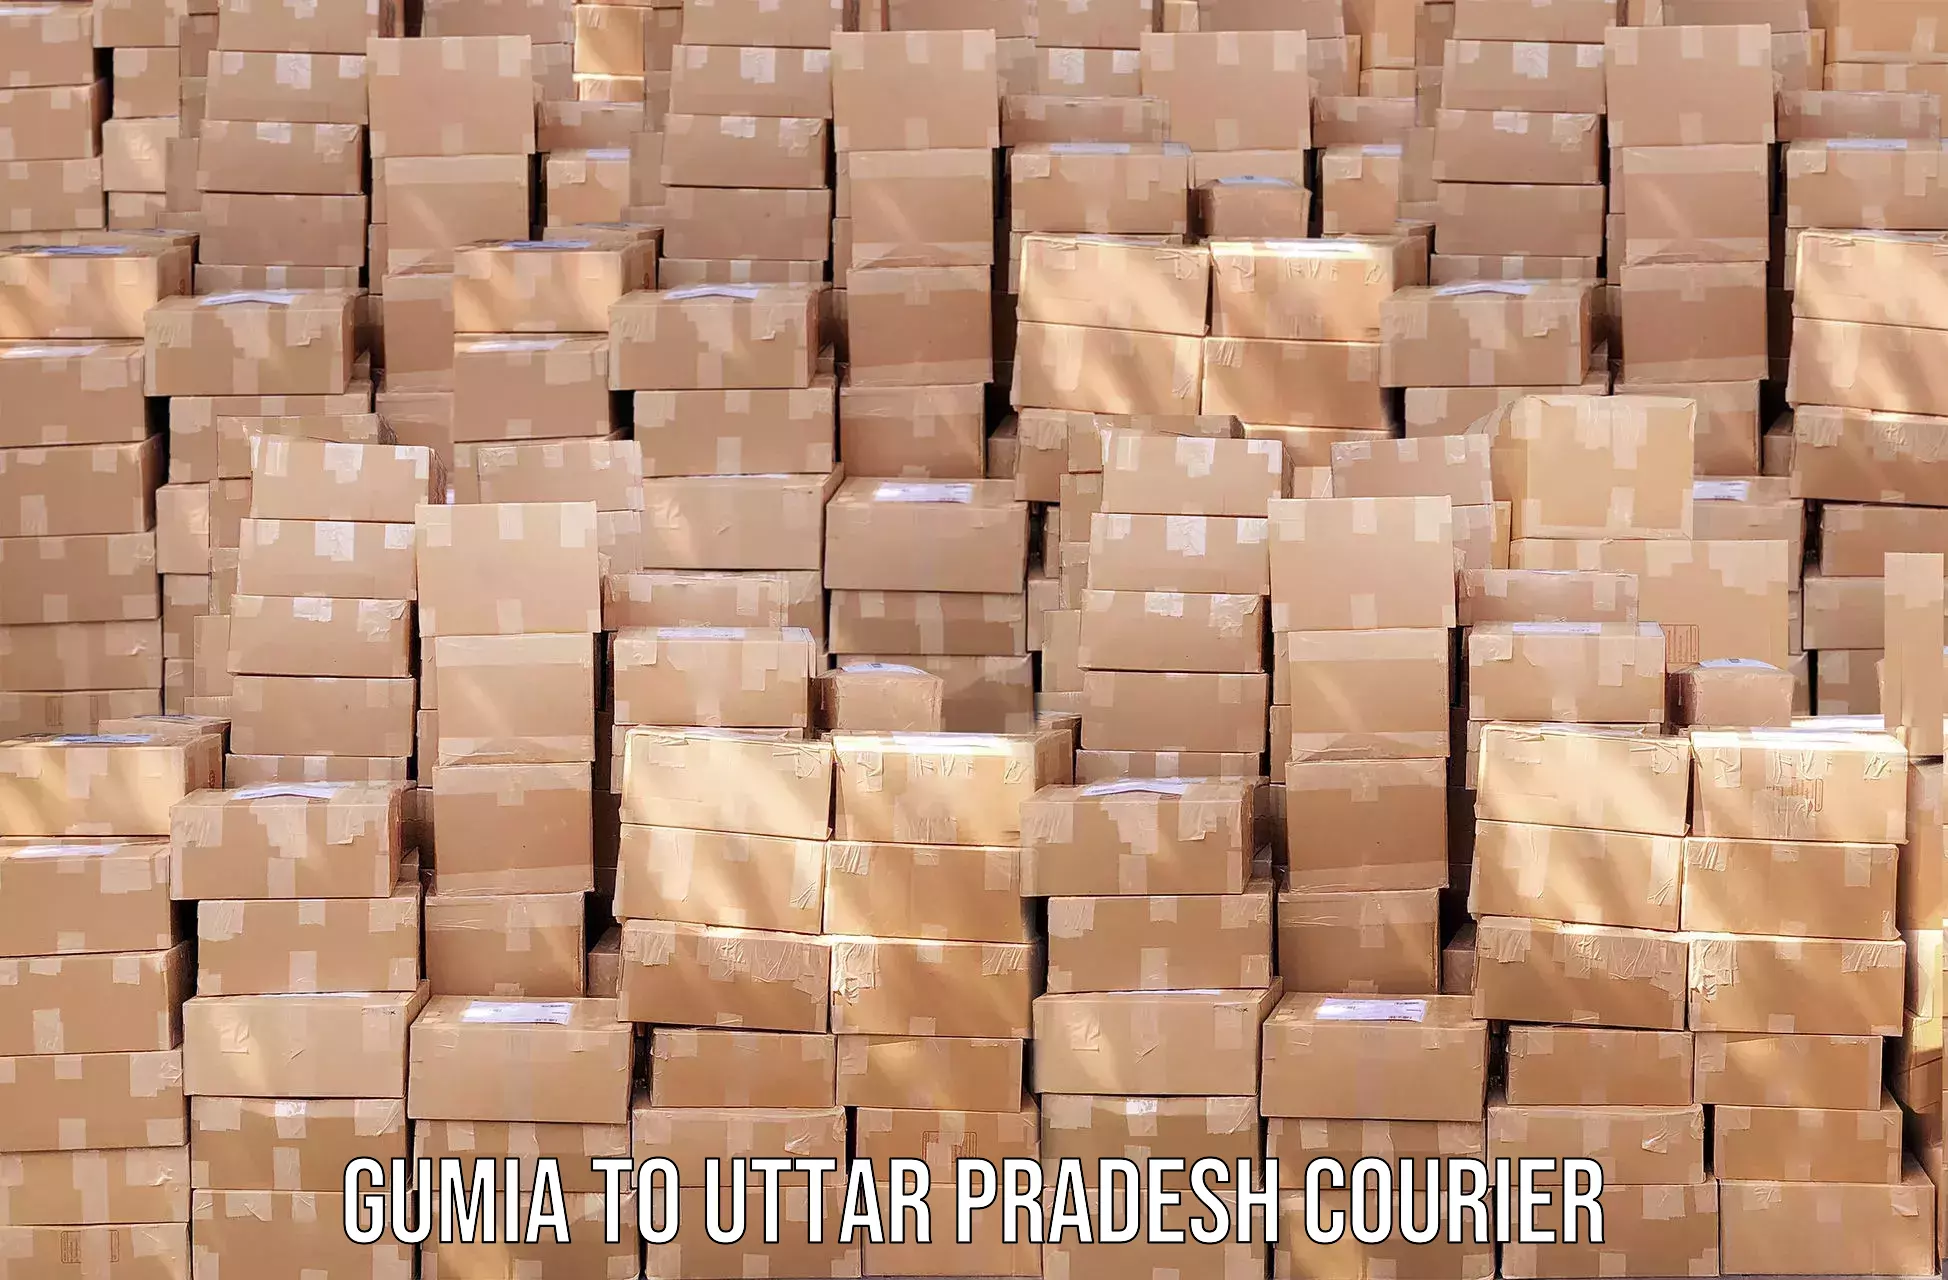 Express courier facilities Gumia to Dariyabad